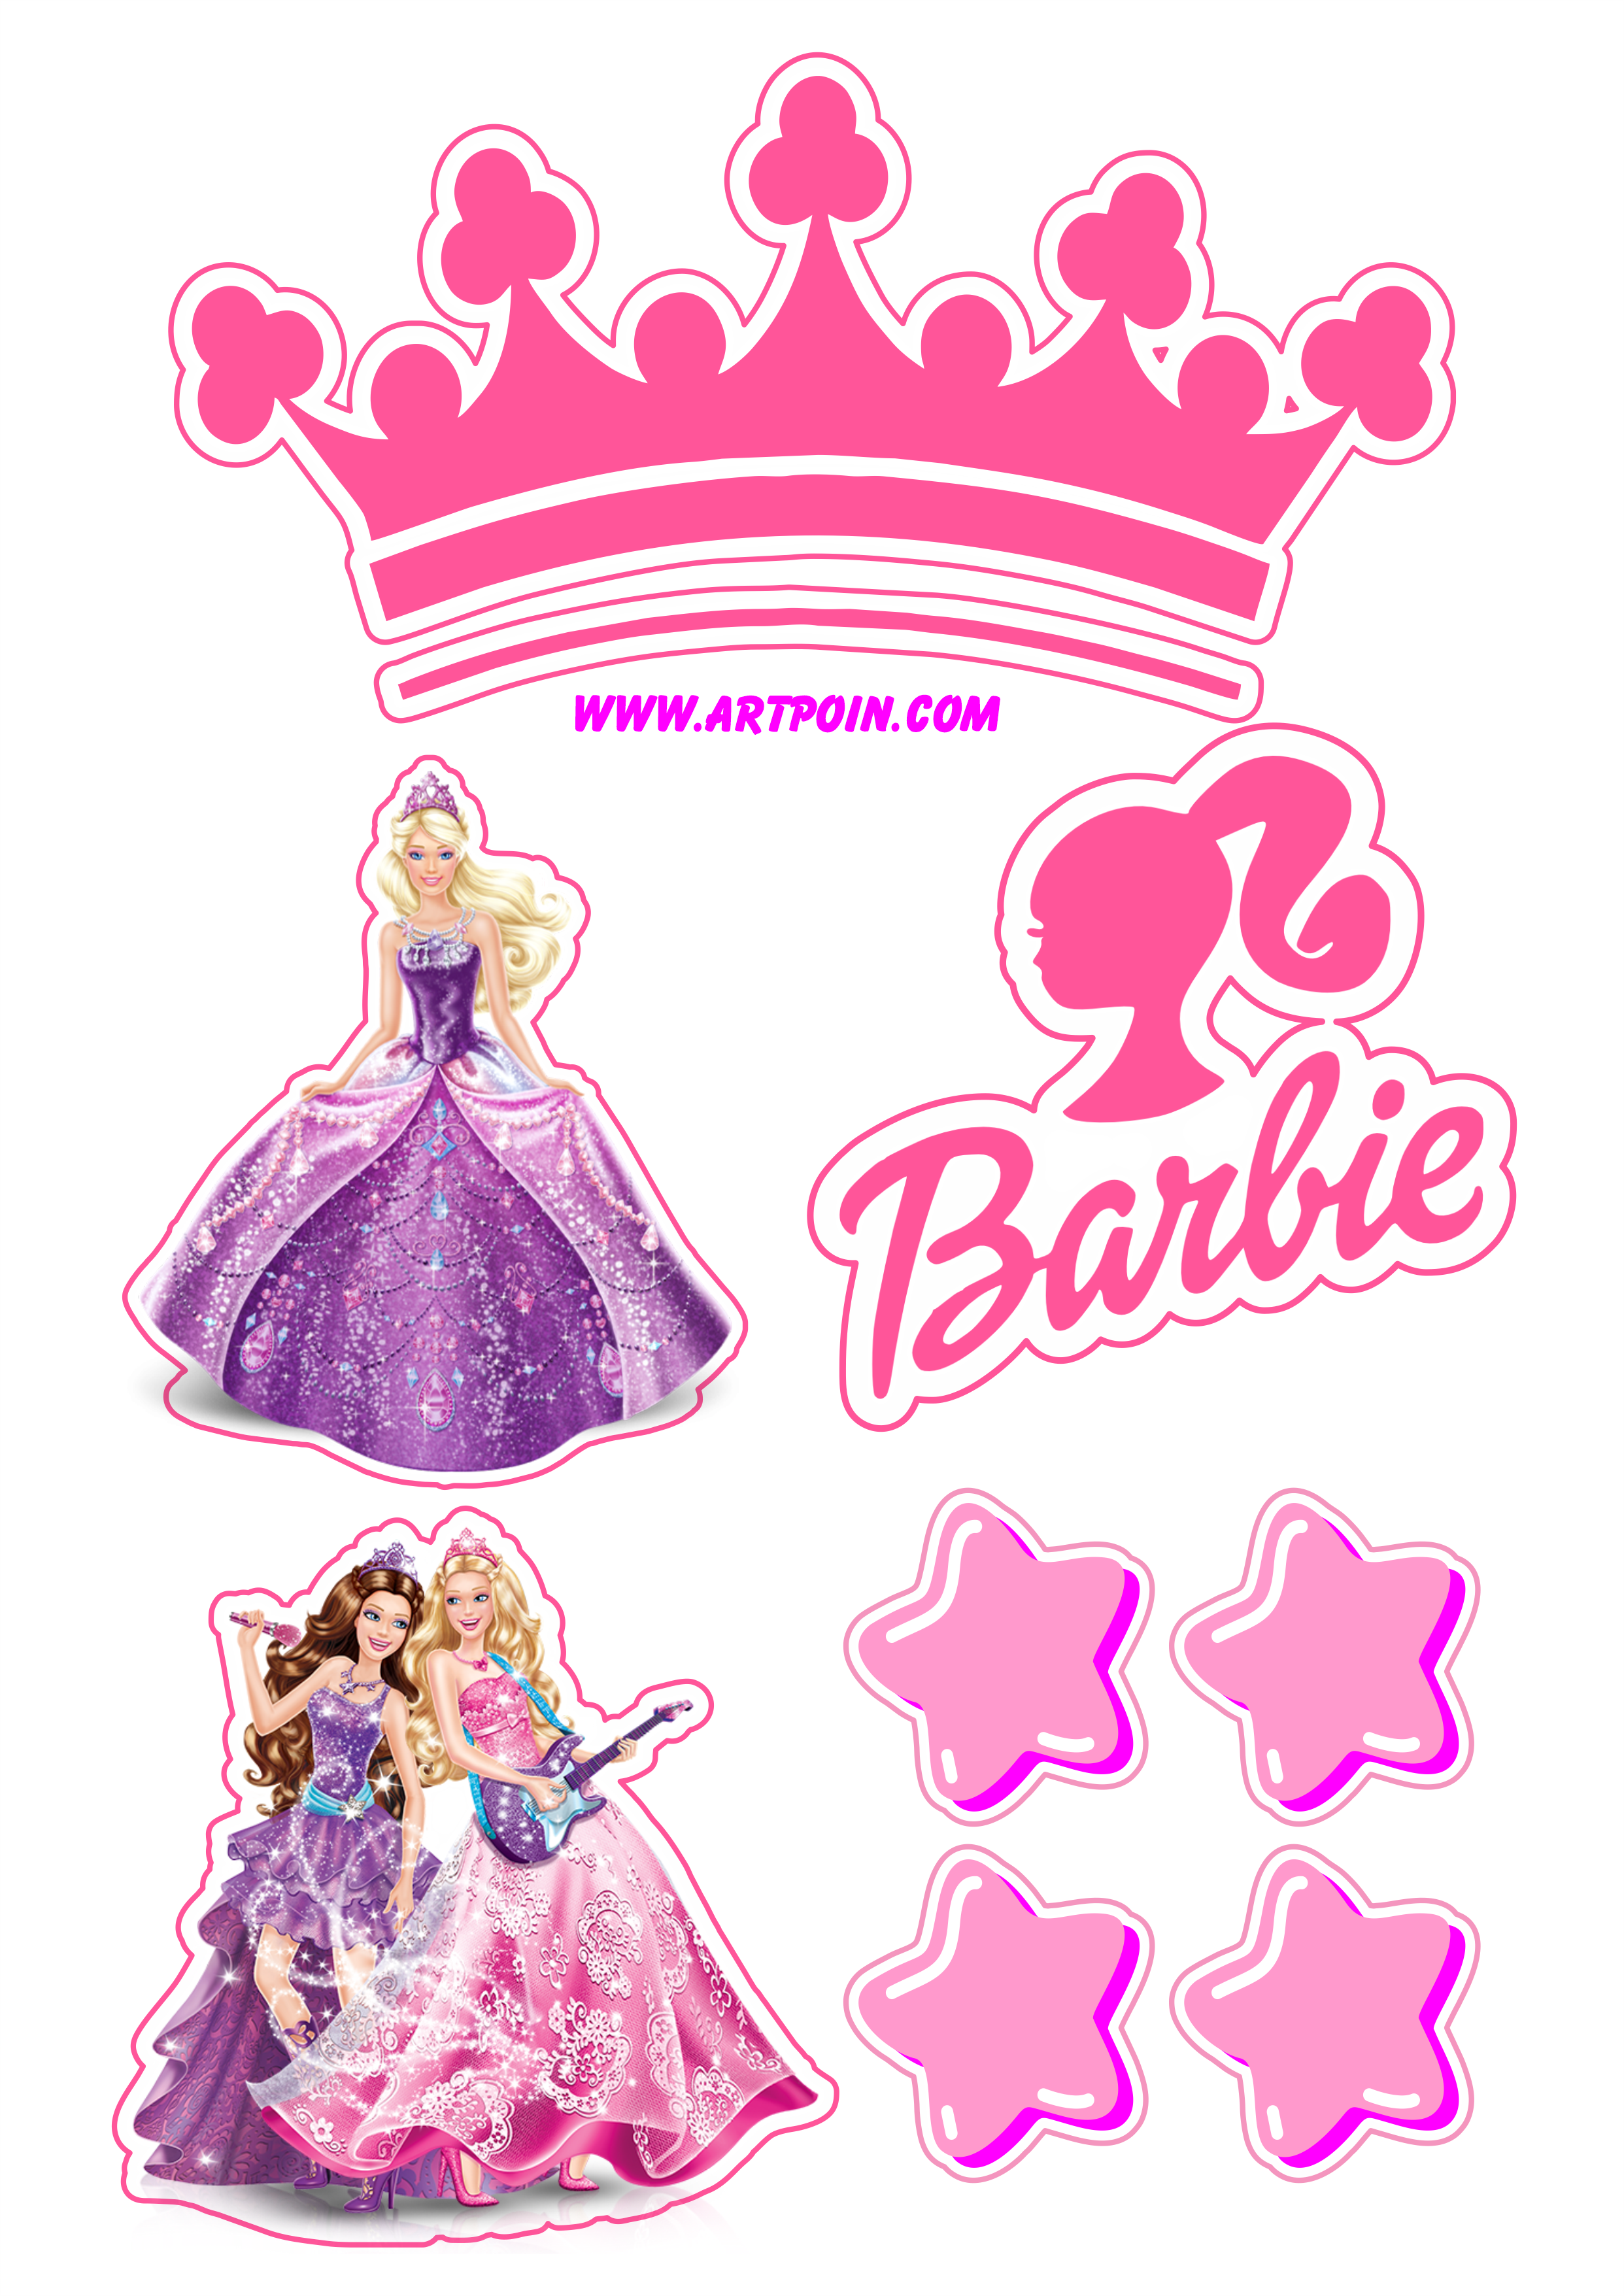 Bolo da Barbie: modelos da sereia, princesa, girl e muito mais